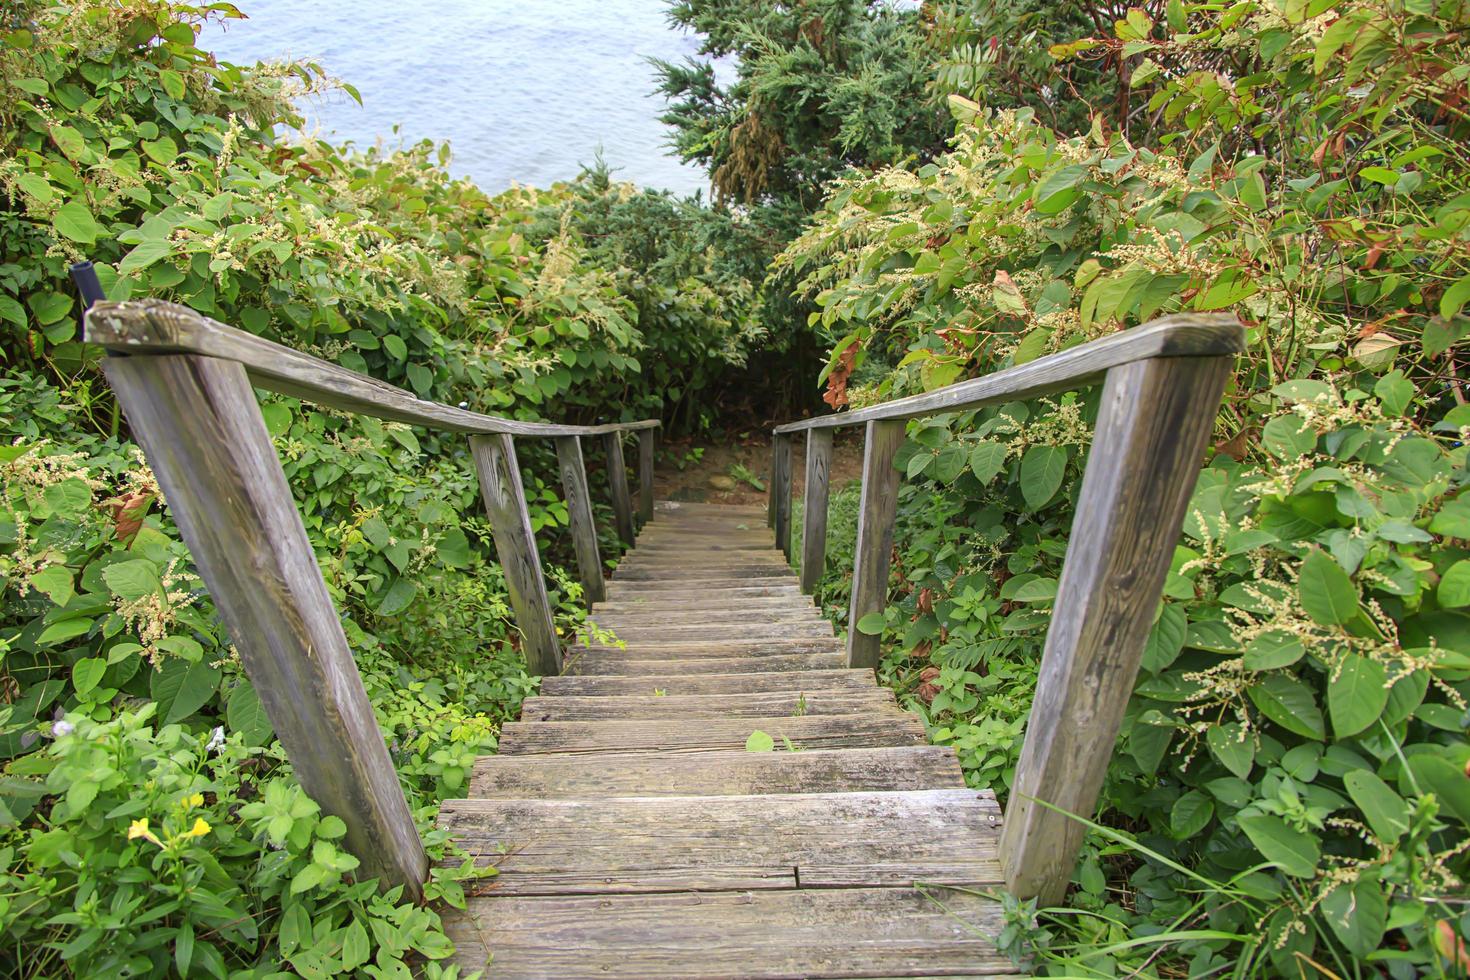 escaliers traversant des buissons envahis par la végétation dans les bois photo